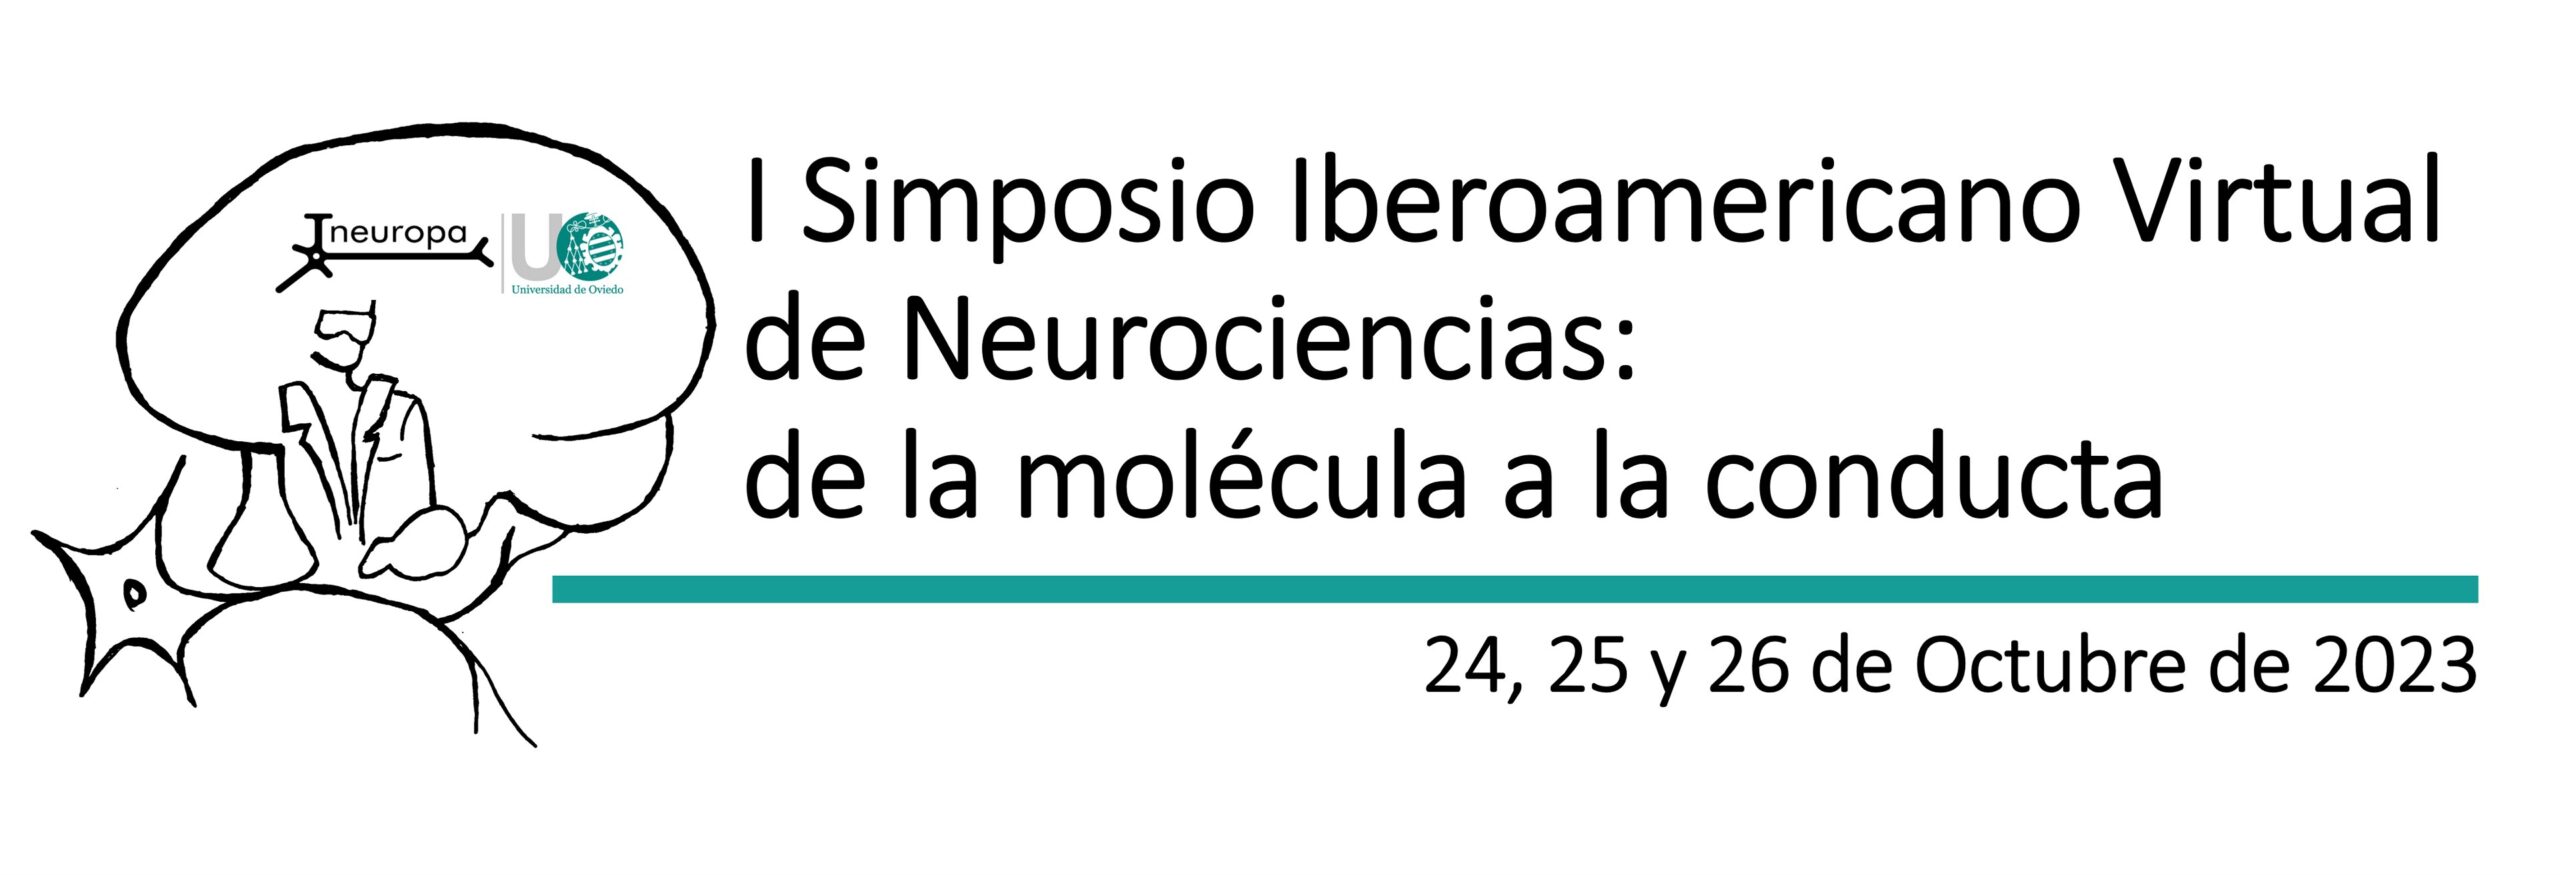 I Simposio Iberoamericano Virtual de Neurociencias: de la molécula a la conducta